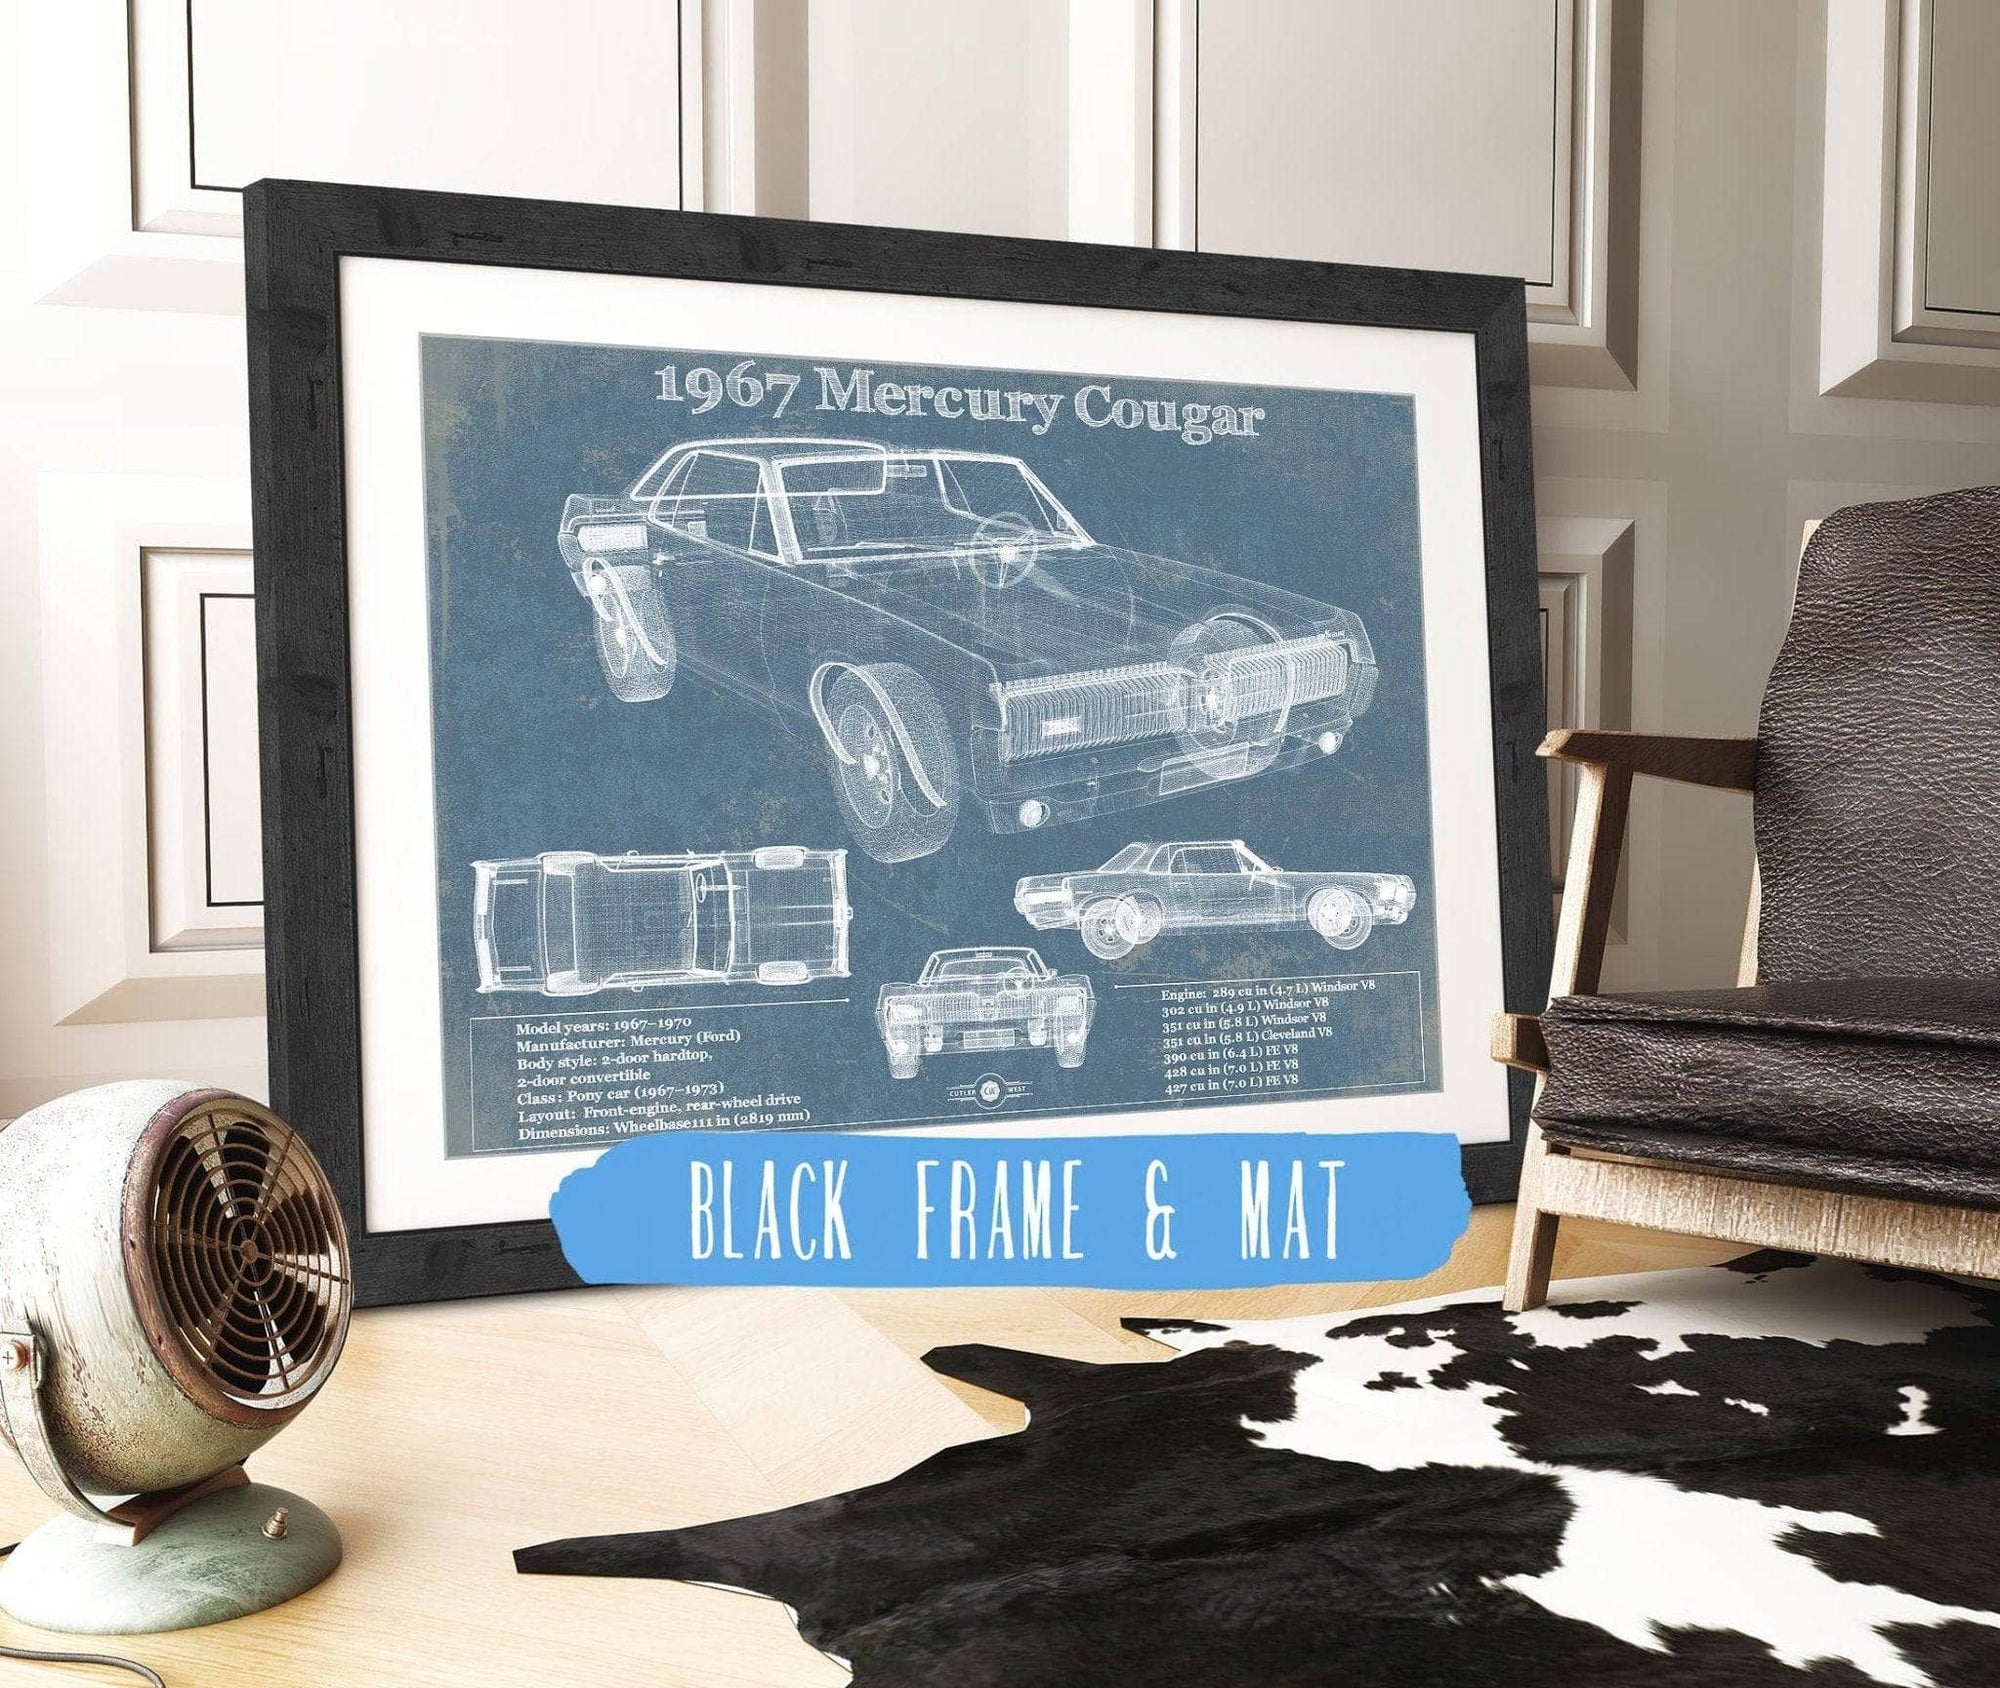 Cutler West Vehicle Collection 1967 Mercury Cougar Vintage Blueprint Auto Print